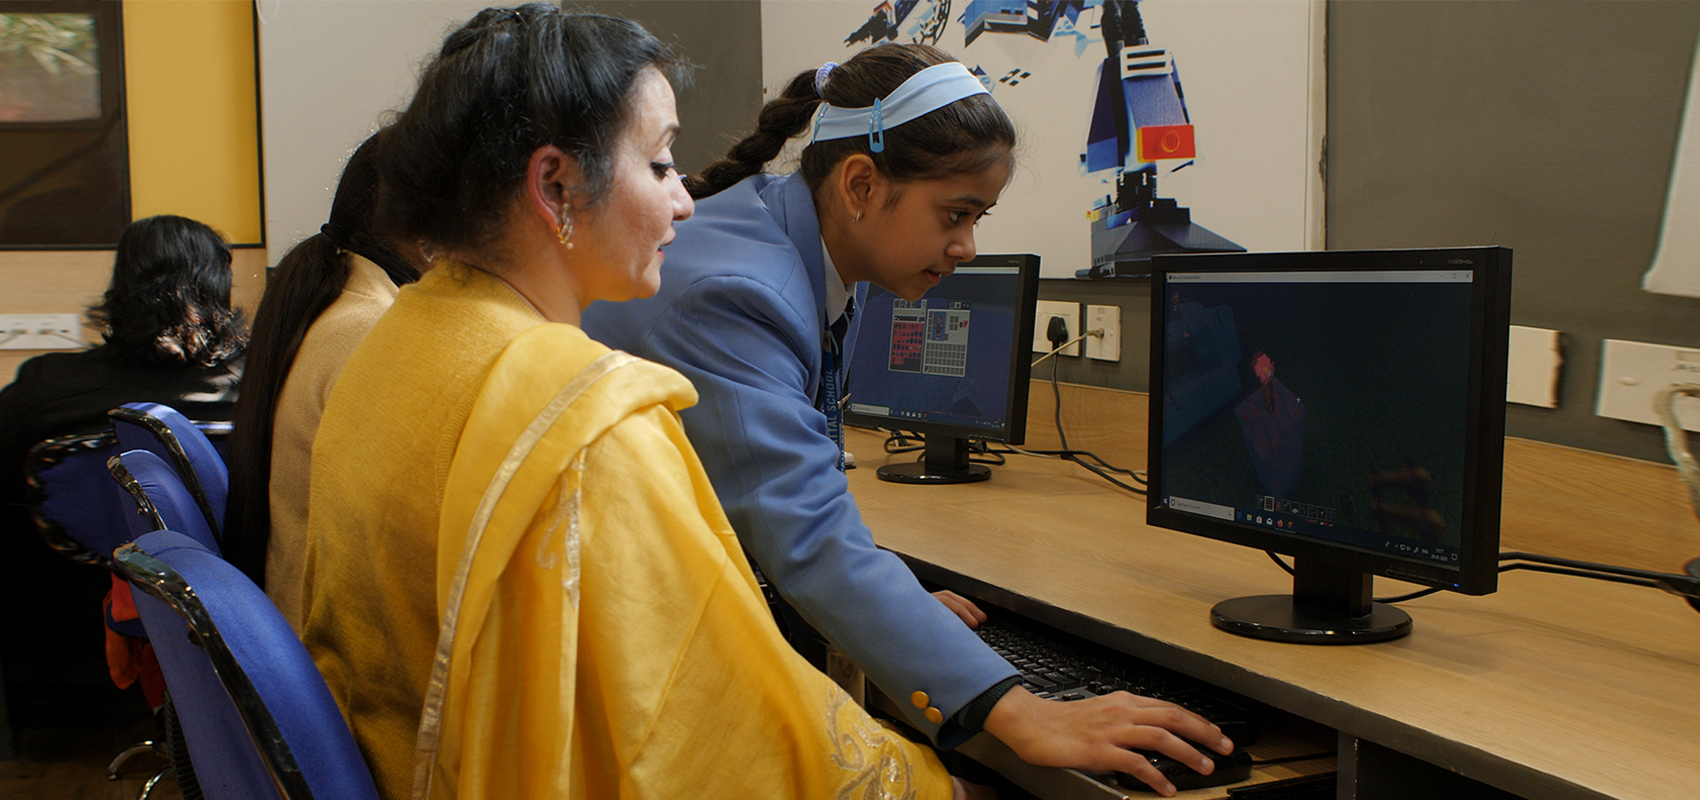 Una estudiante de 13 años con uniforme escolar ayuda a su profesora con Minecraft. Sus dos manos trabajan en el teclado mientras la profesora mira el monitor en la mesa. Hay dos otras mujeres y un monitor más en la imagen.